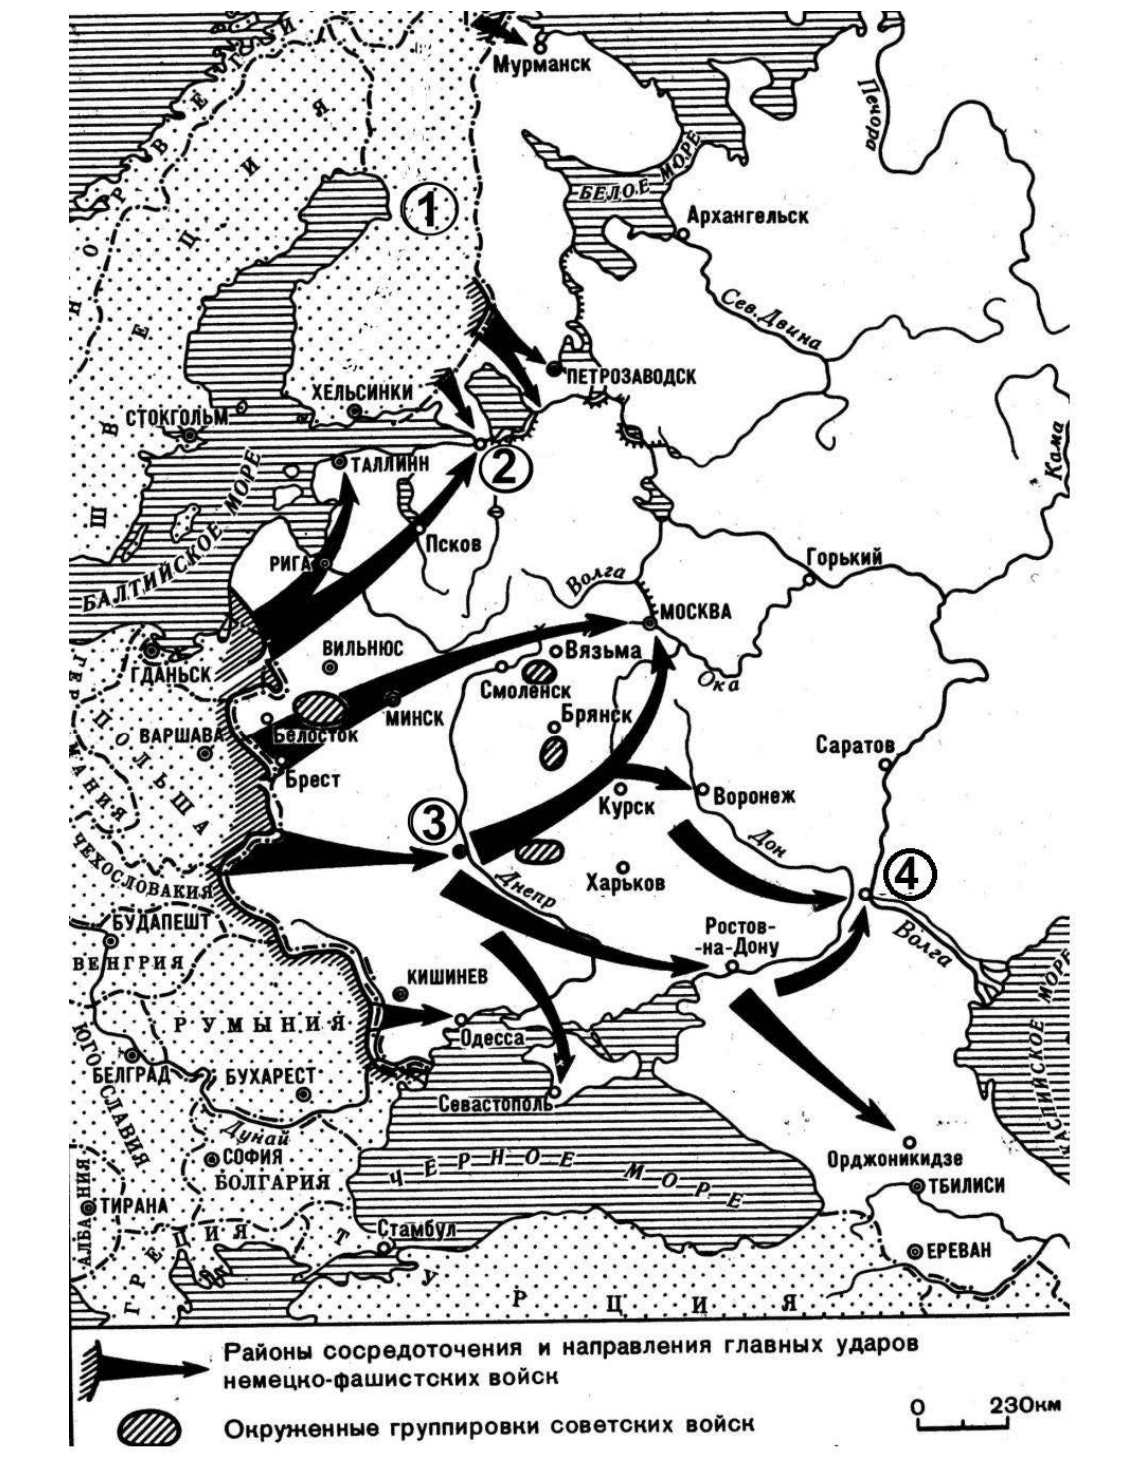 Нападение германии на ссср 1941. Карта наступления фашистов на СССР 1941. Карта плана Барбаросса 1941. План нападения фашистской Германии 1941. План нападения СССР на Германию в 1941.